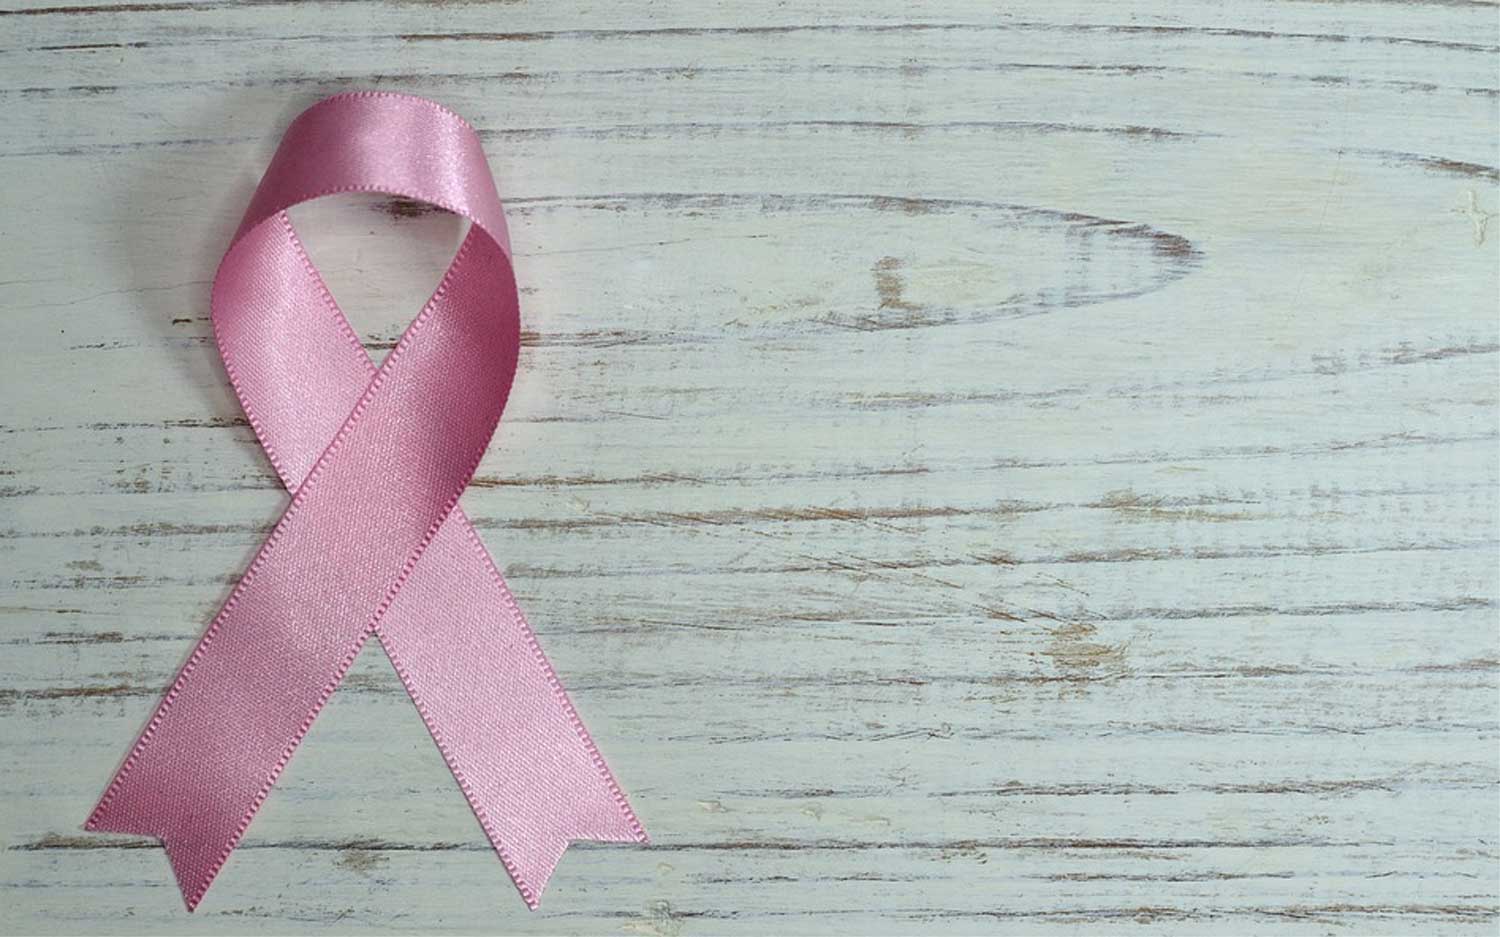 'Zeldzame kanker bij 1 op de 5 kankerpatiënten'